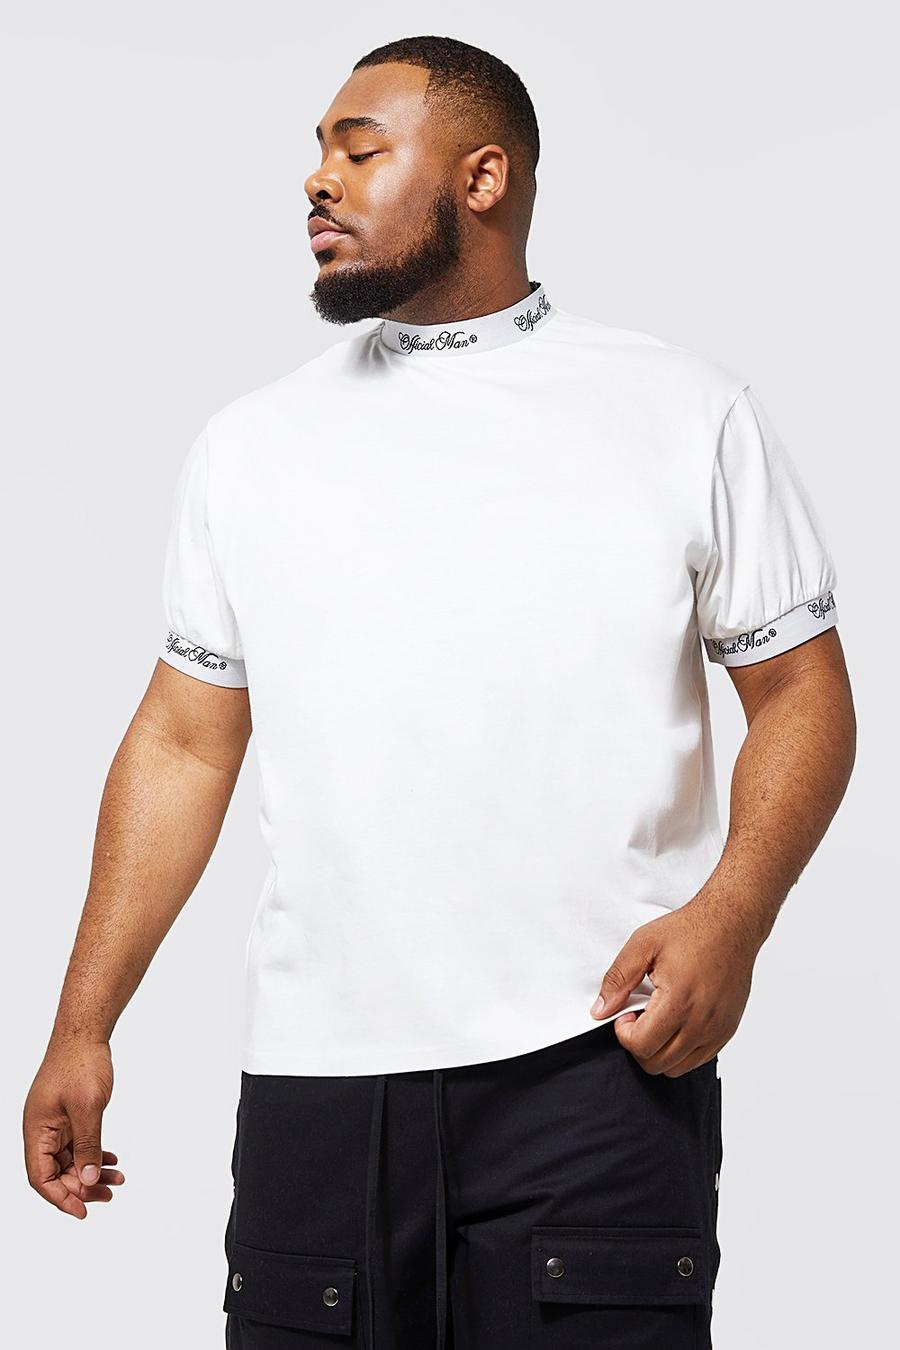 Plus lockeres geripptes Man T-Shirt, Ecru white